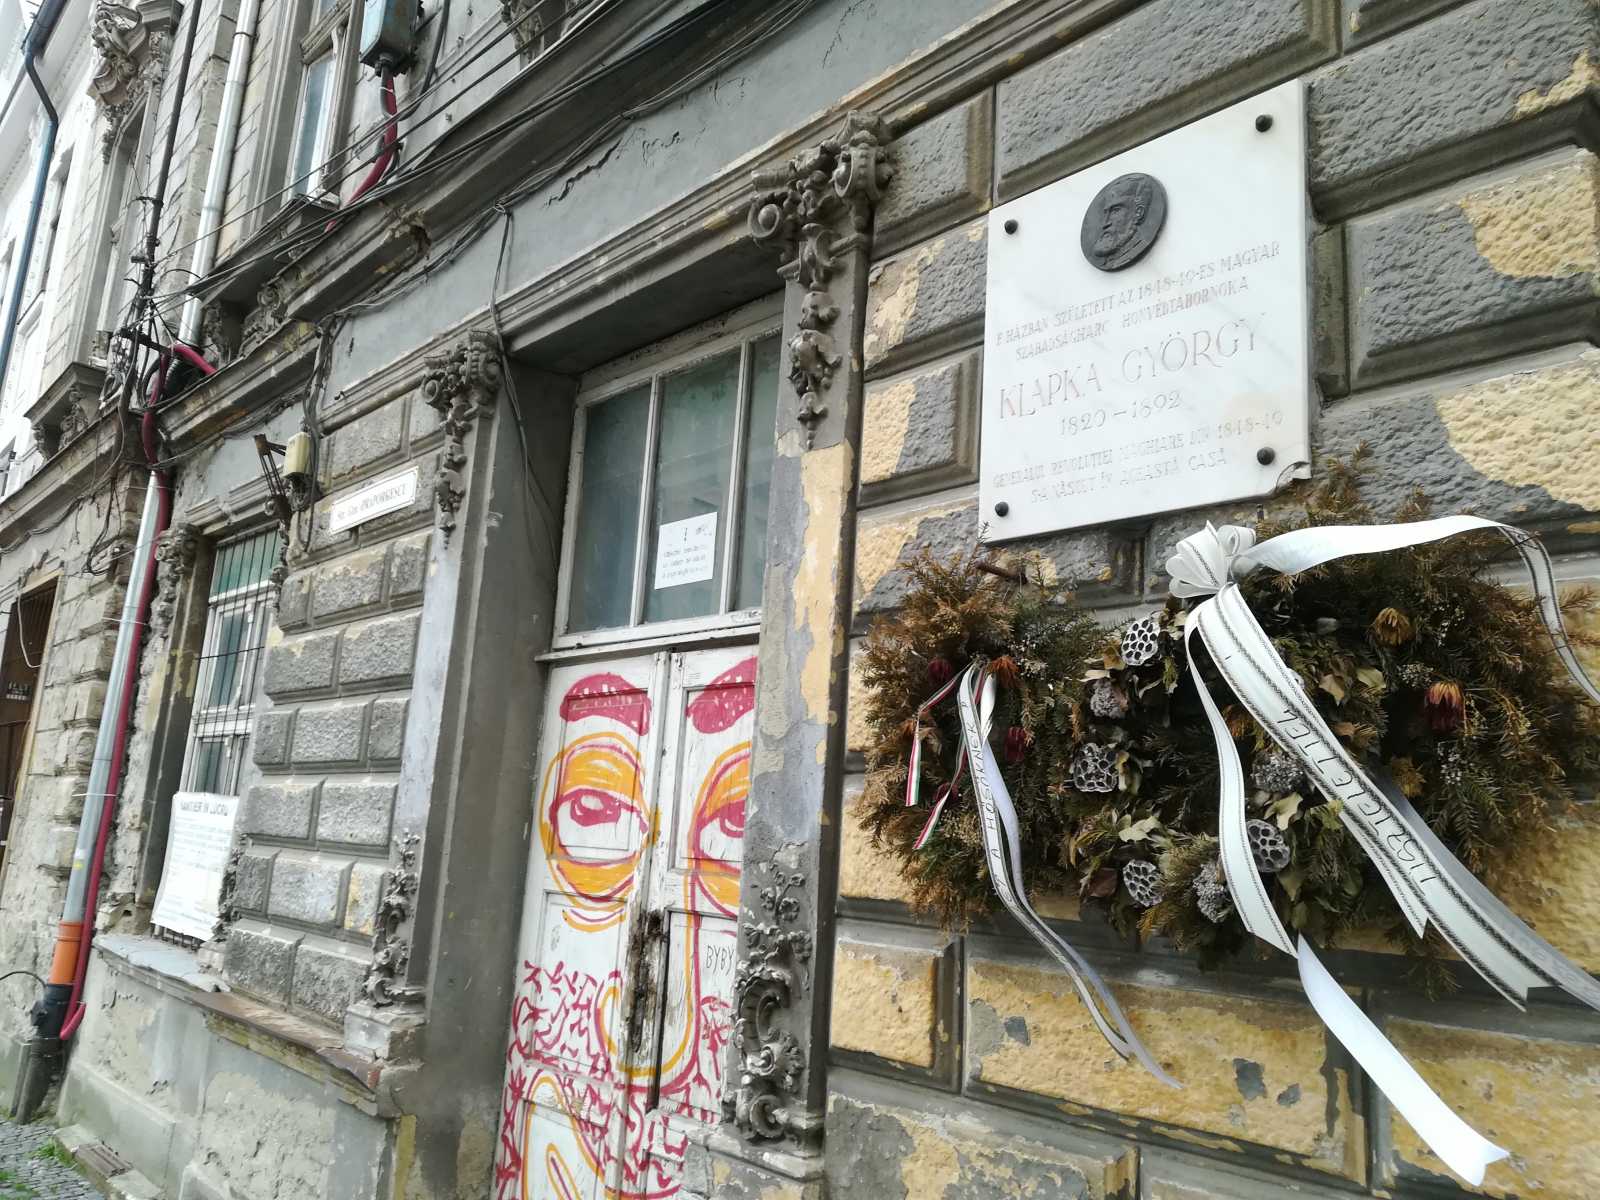 Klapka György honvédtábornok szülőháza is siralmas állapotban van | A szerző felvétele  